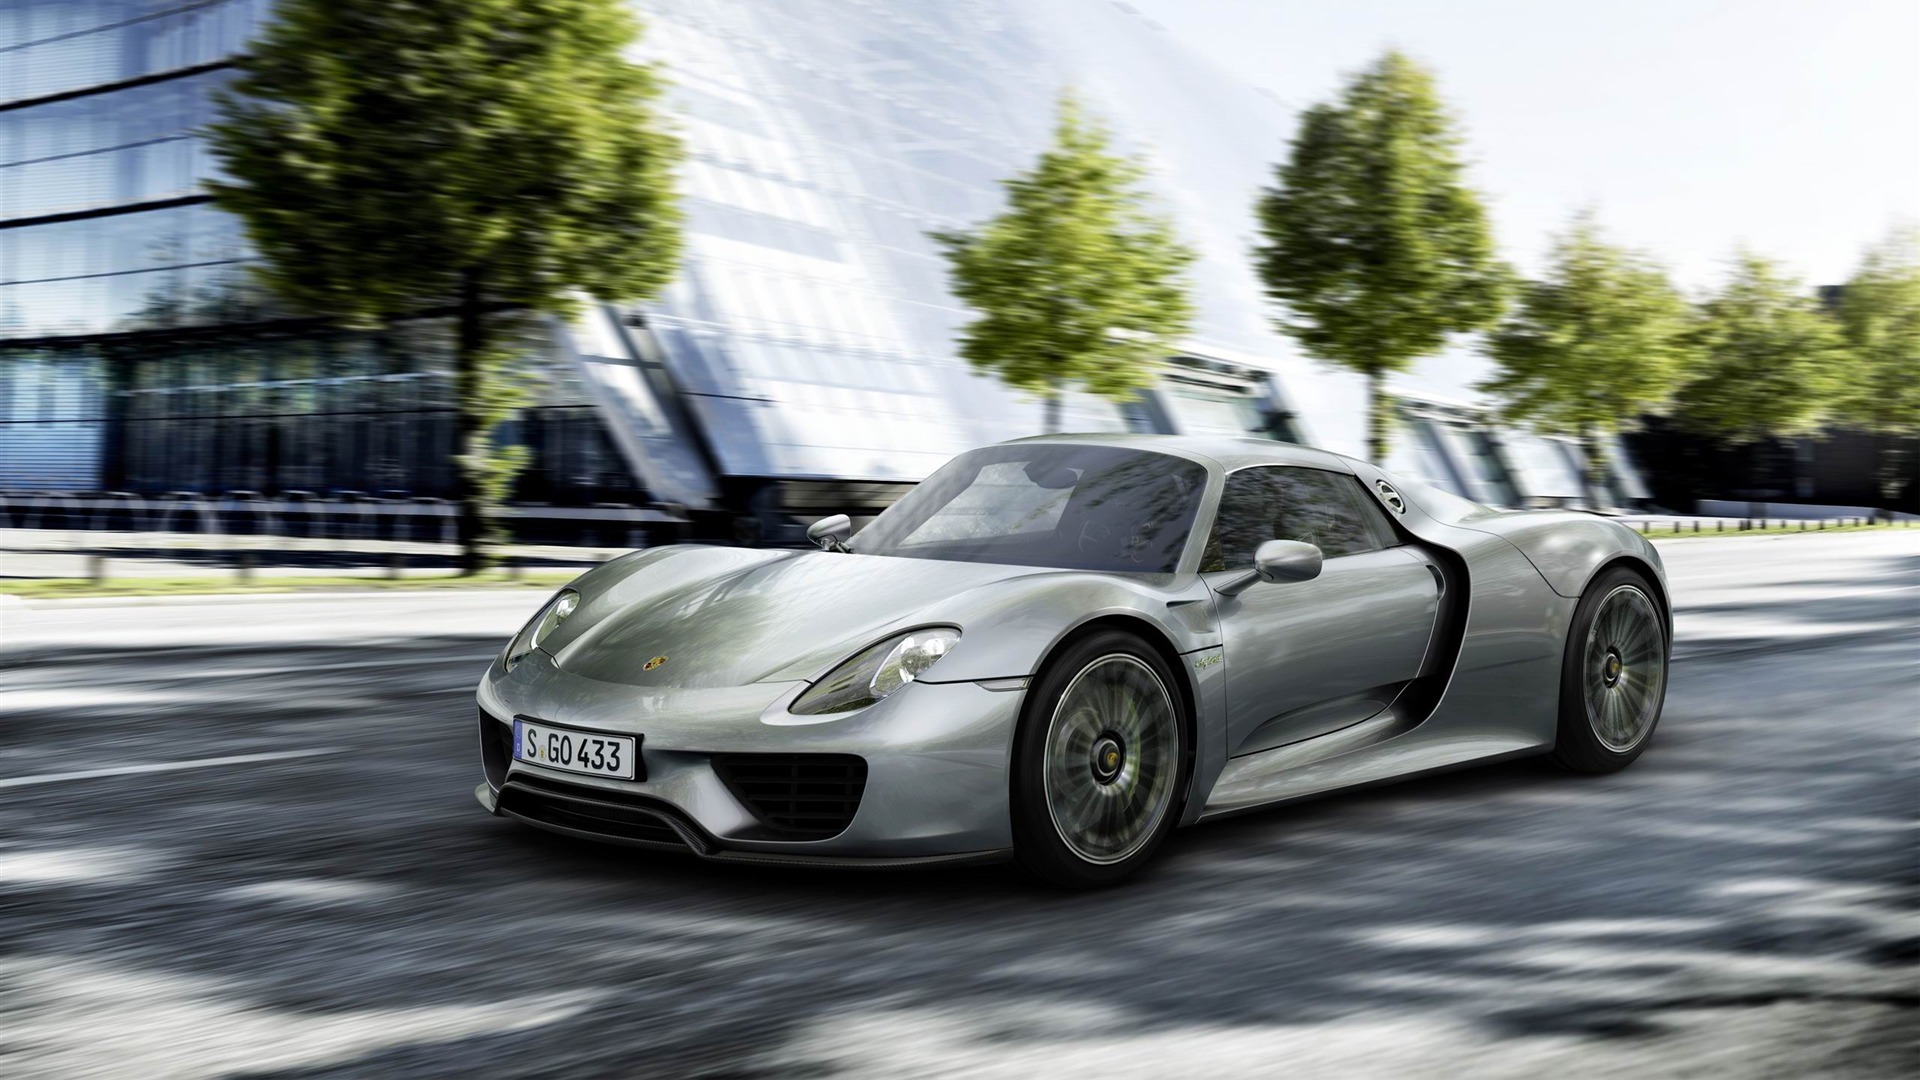 Download mobile wallpaper Porsche 918 Spyder, Porsche, Silver Car, Supercar, Vehicles, Car for free.